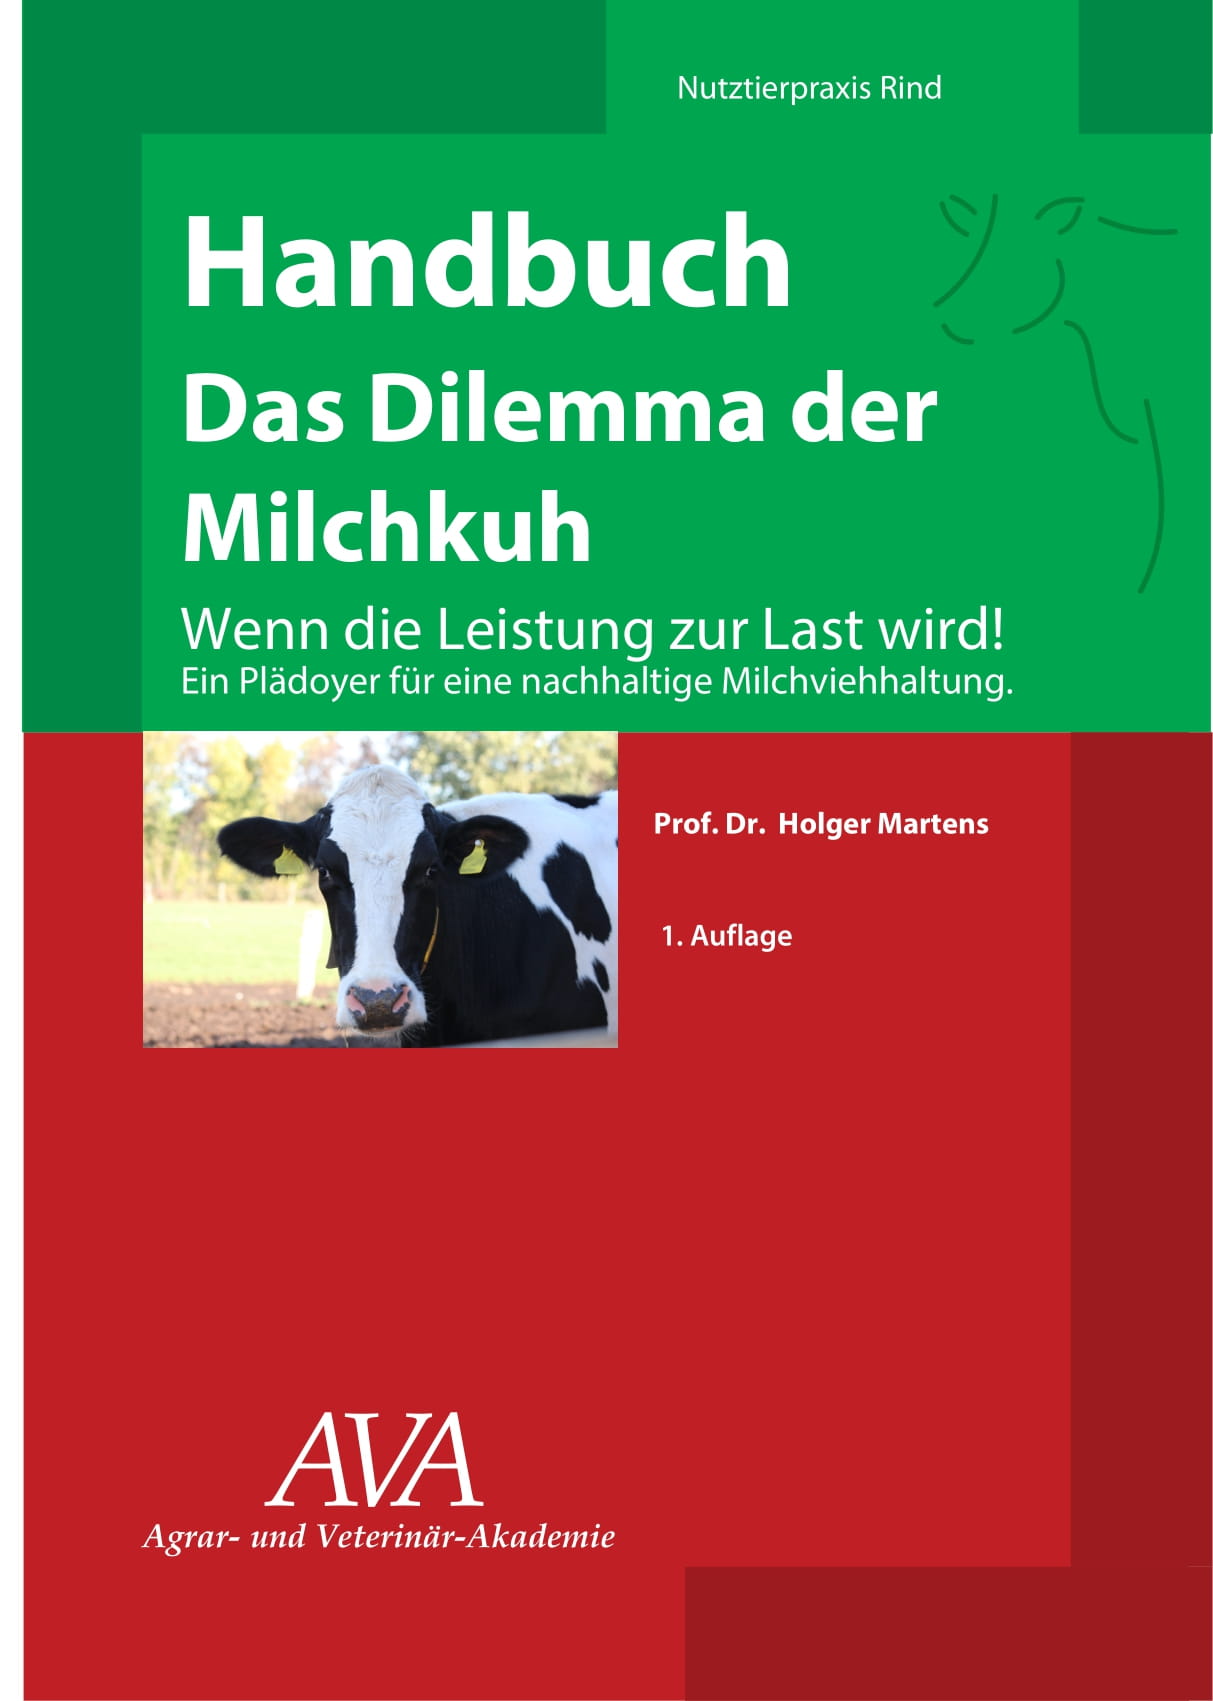 Landwirtschaft News & Agrarwirtschaft News @ Agrar-Center.de | das 110-seitige Buch sollte jeder Tierarzt, Landwirt, Berater und Fach-Studierende lesen